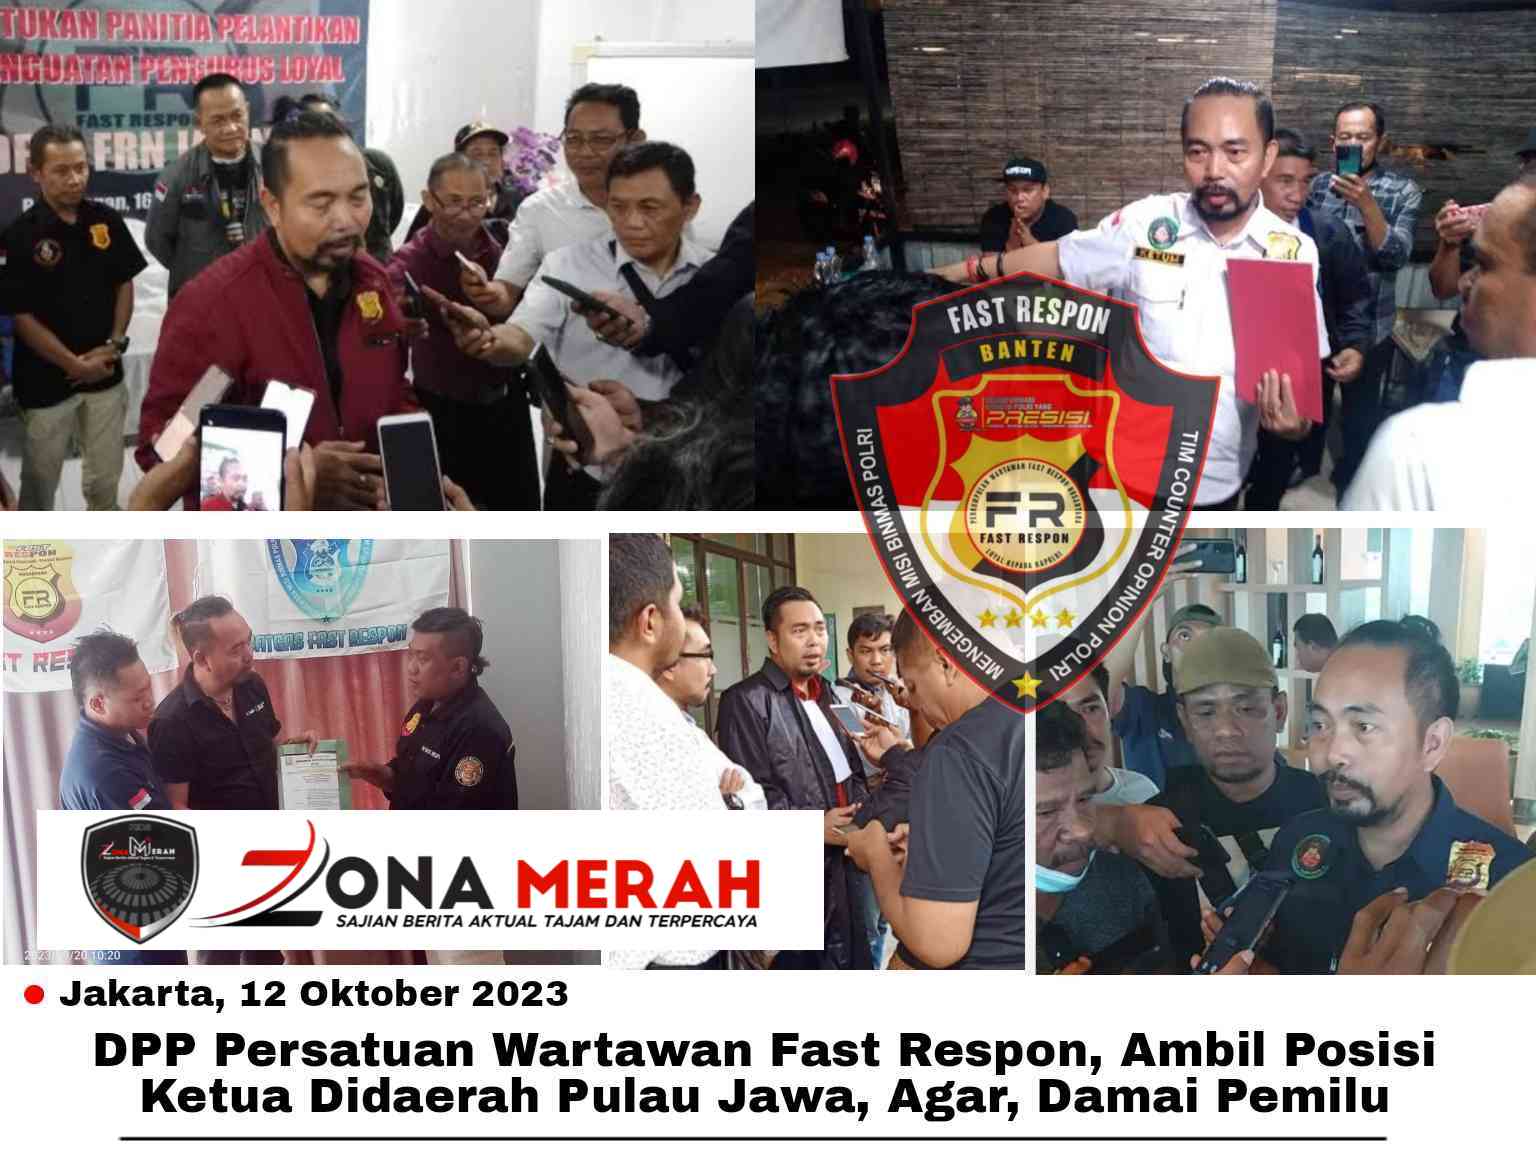 DPP Persatuan Wartawan Fast Respon, Ambil Posisi Ketua Didaerah Pulau Jawa, Agar, Damai Pemilu